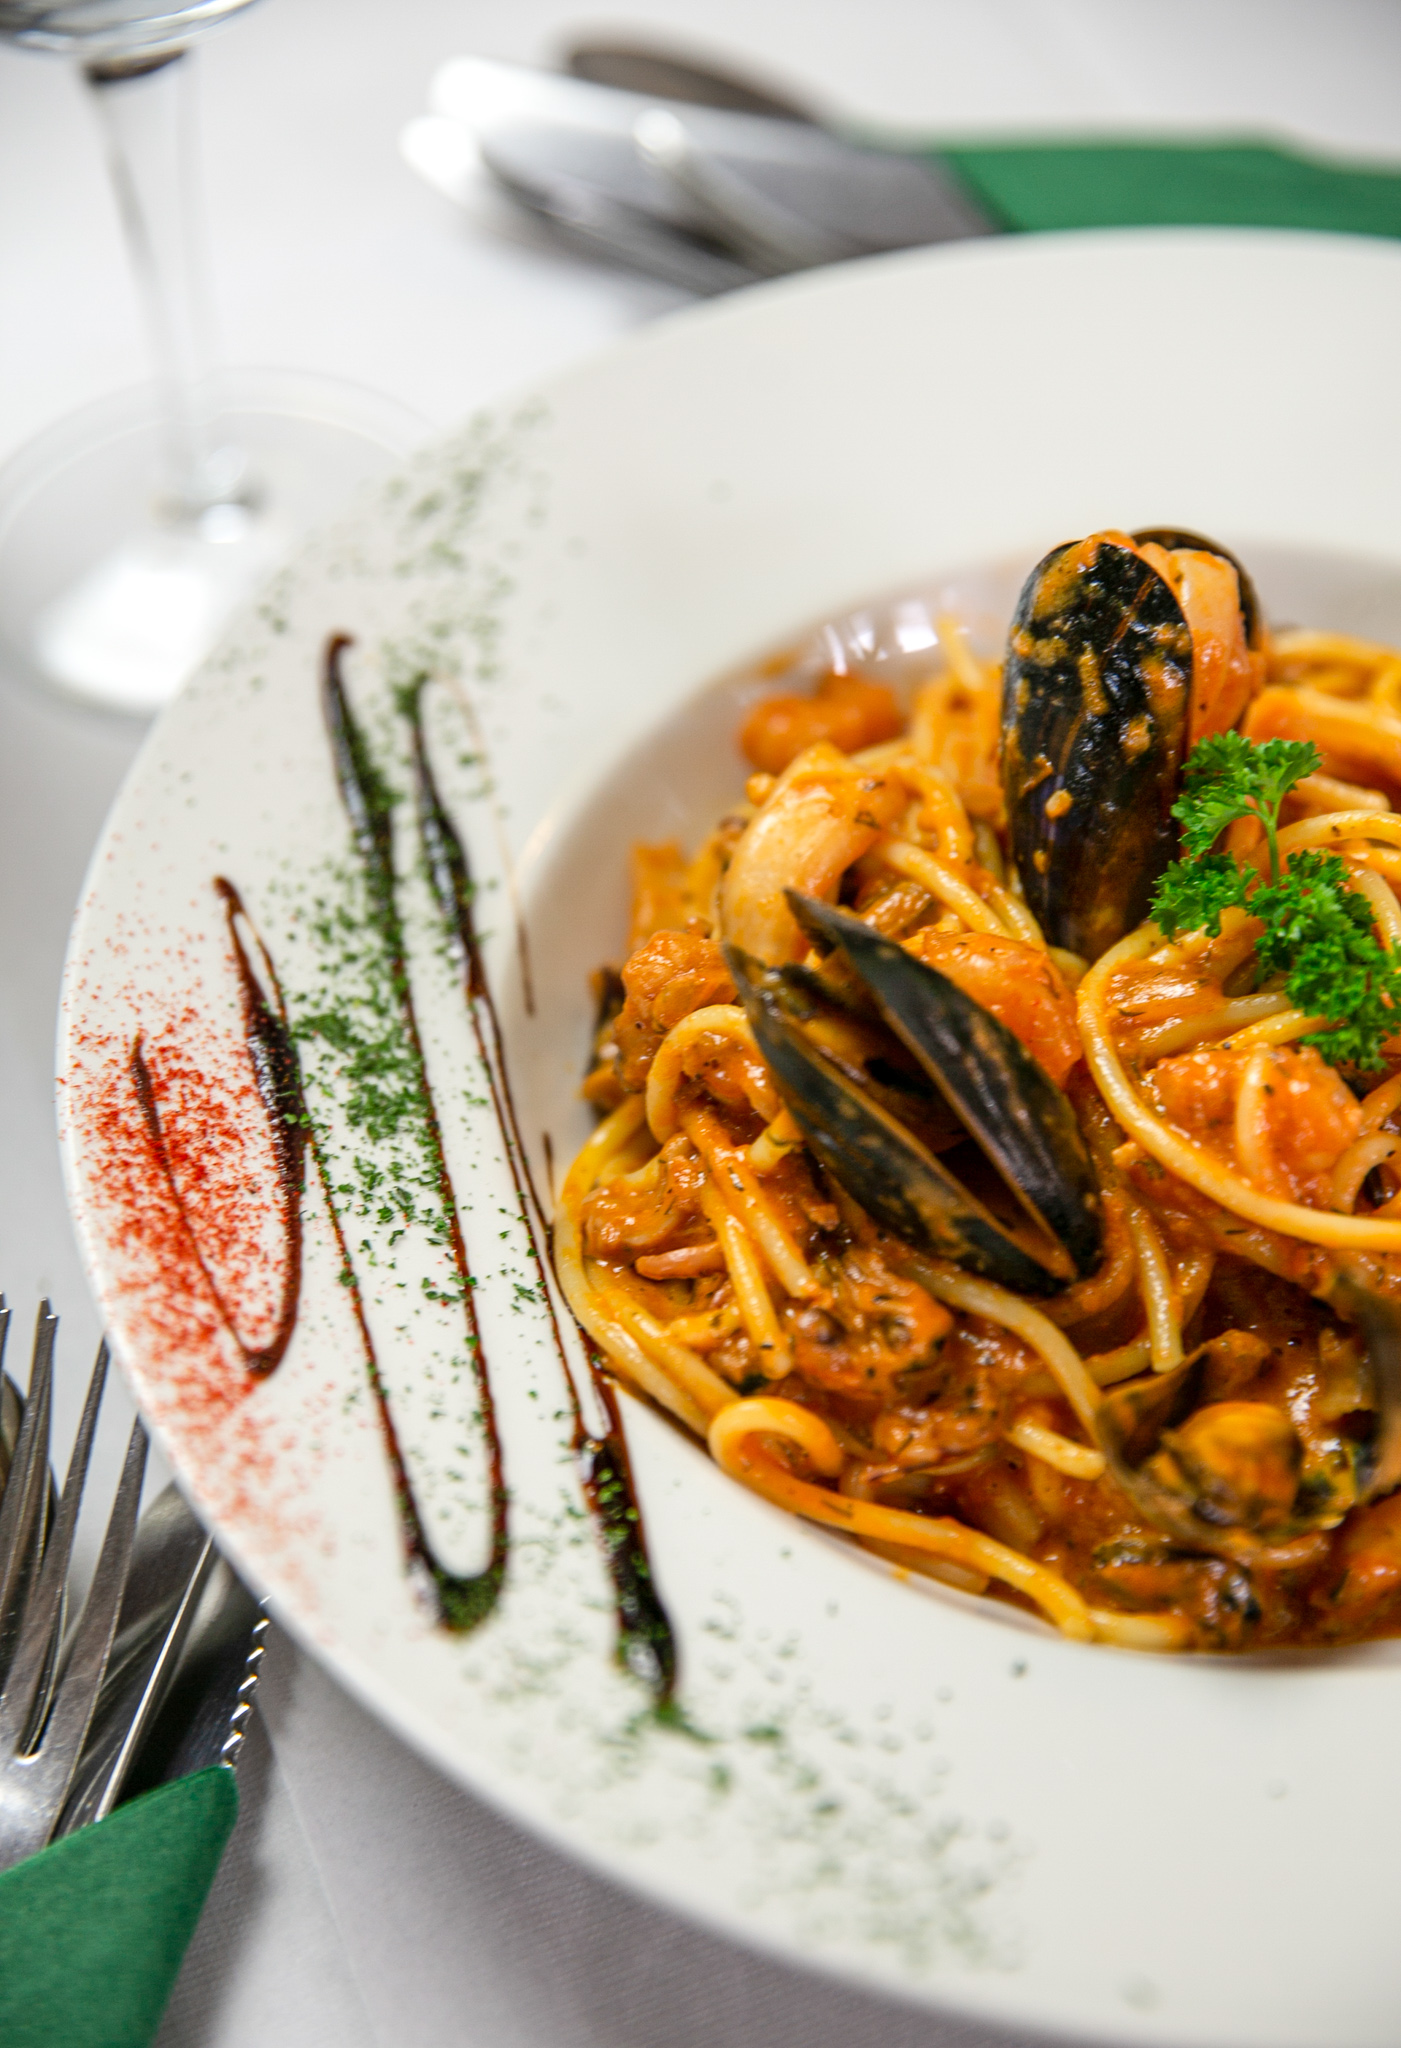 LA CAMPANIA CONTACT US ITALIAN AUTHENTIC CUISINE DELICIOUS ARUNDEL FOOD RESTAURANT FINE ITALIAN DINING MAIN MENU WEST SUSSEX